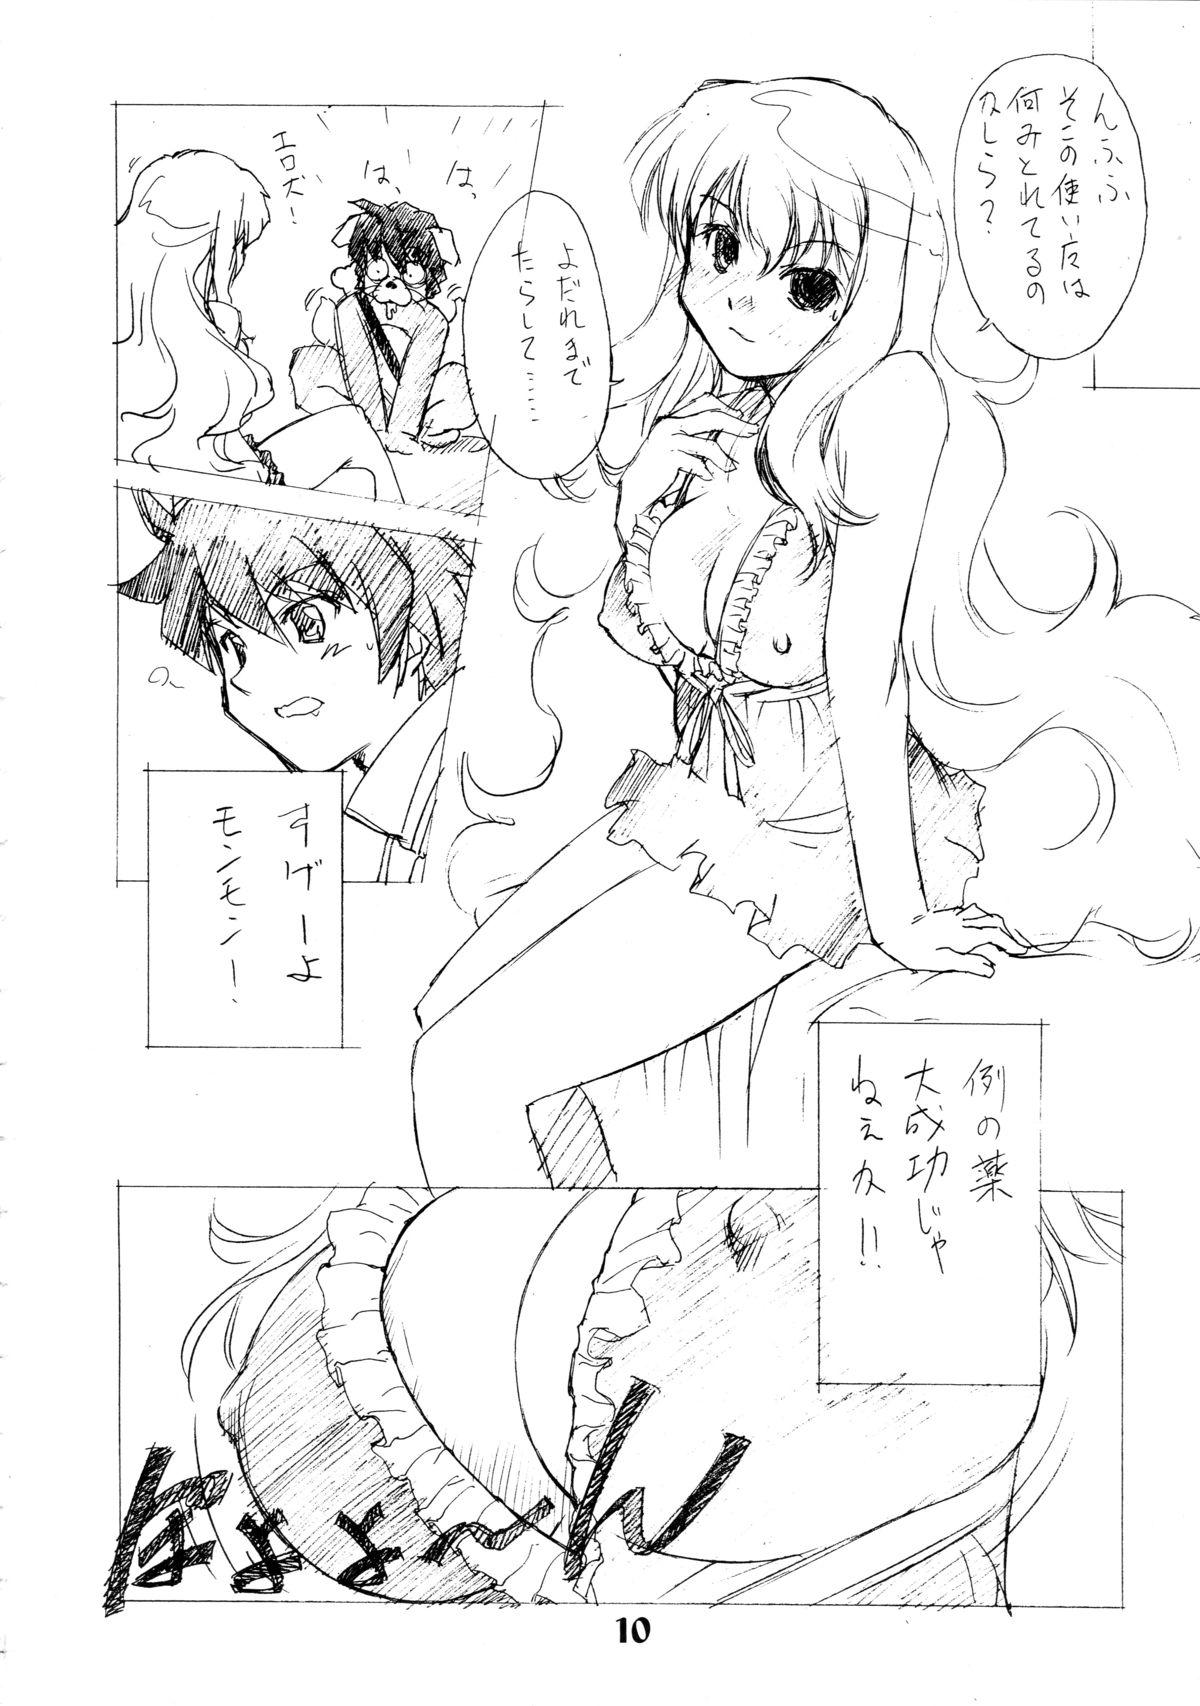 Cam Zero Revo 2 - Zero no tsukaima Kissing - Page 10